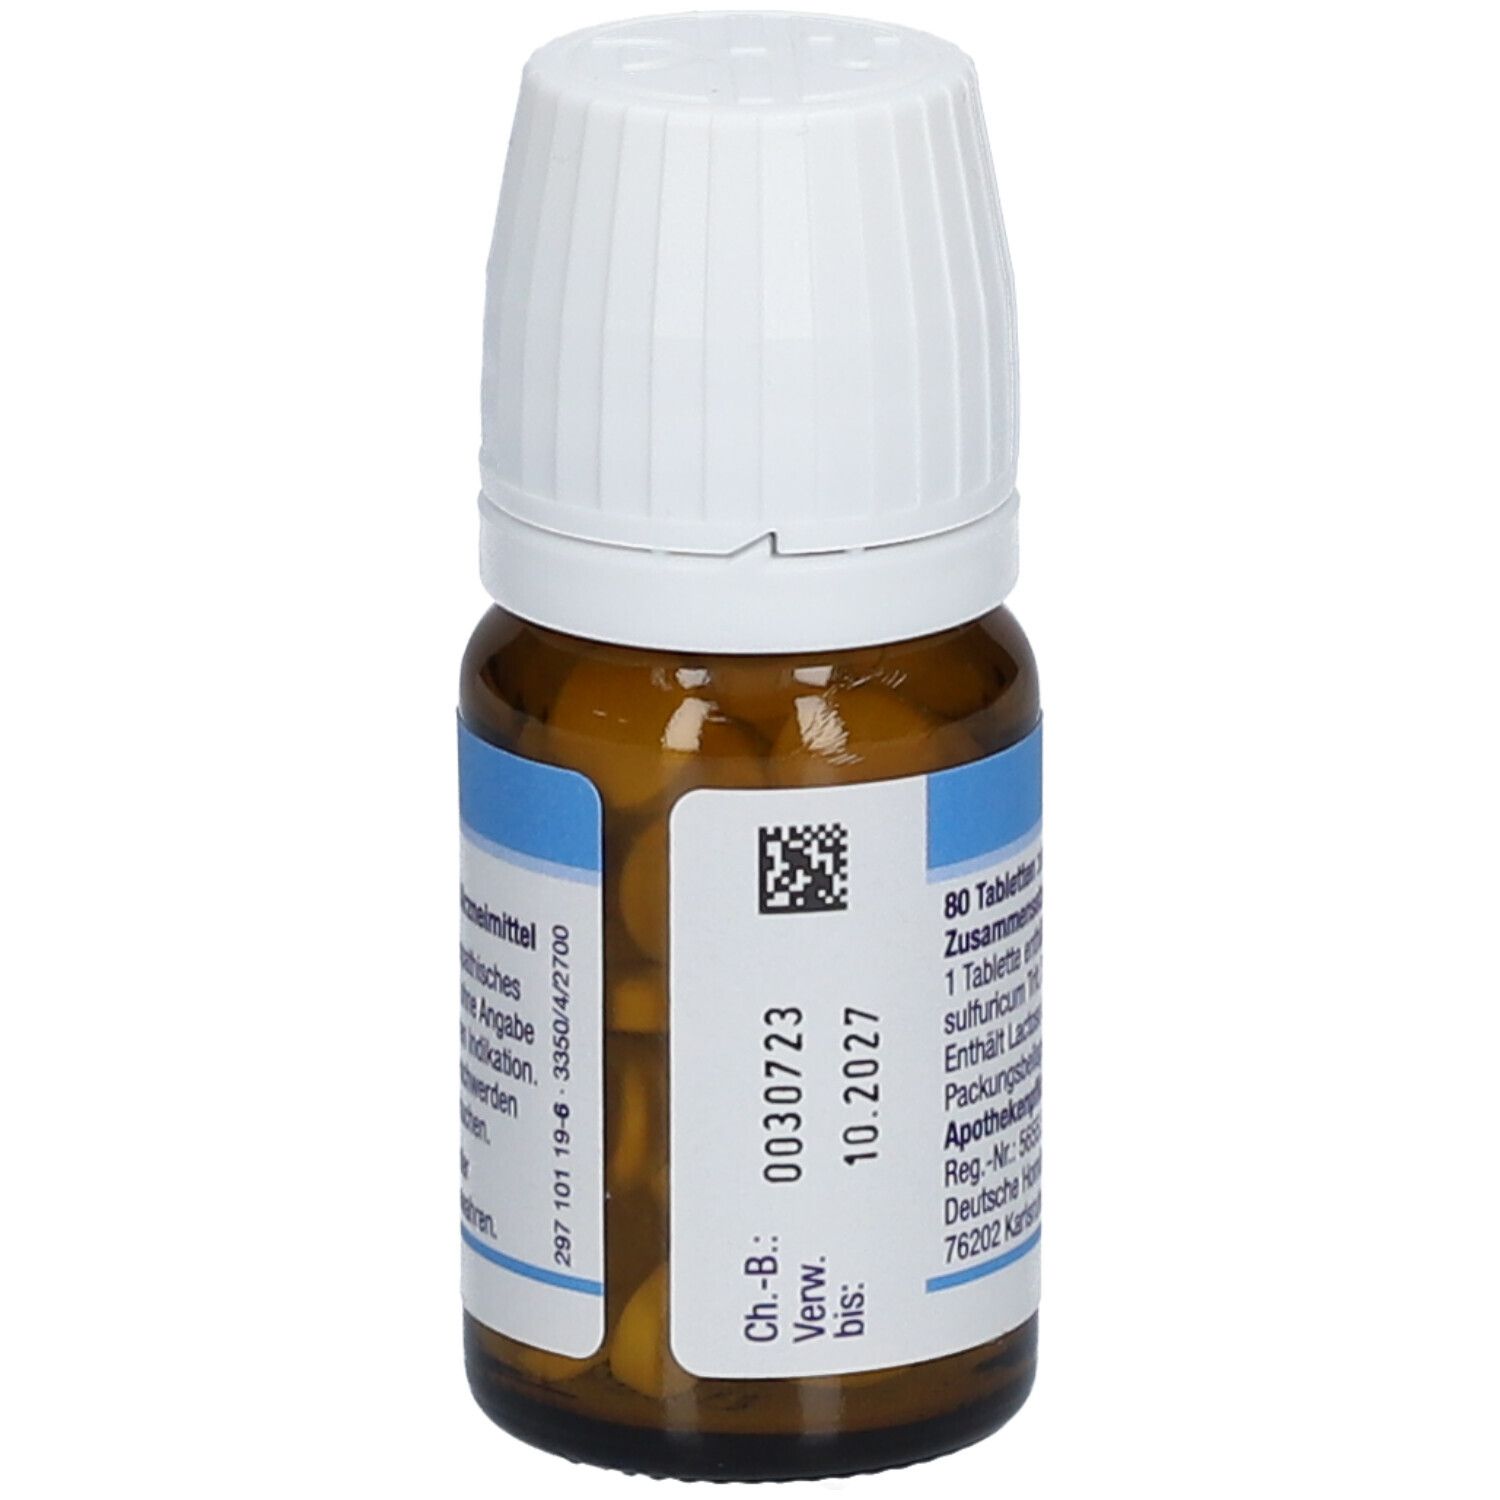 DHU Schüßler-Salz Nr. 10® Natrium sulfuricum D12